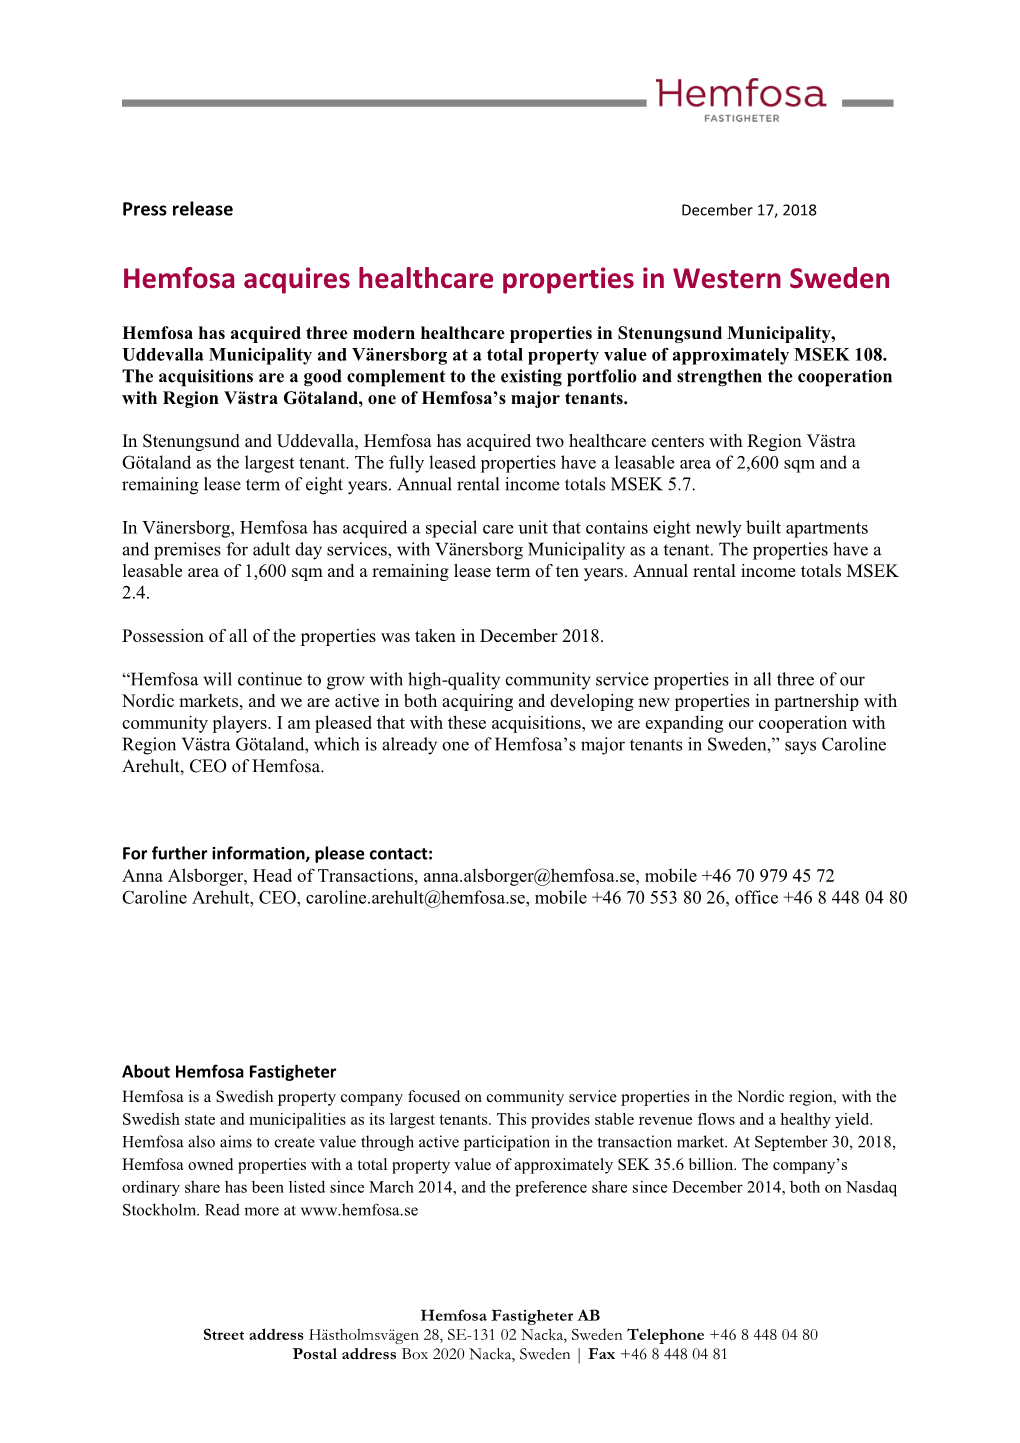 Hemfosa Acquires Healthcare Properties in Western Sweden